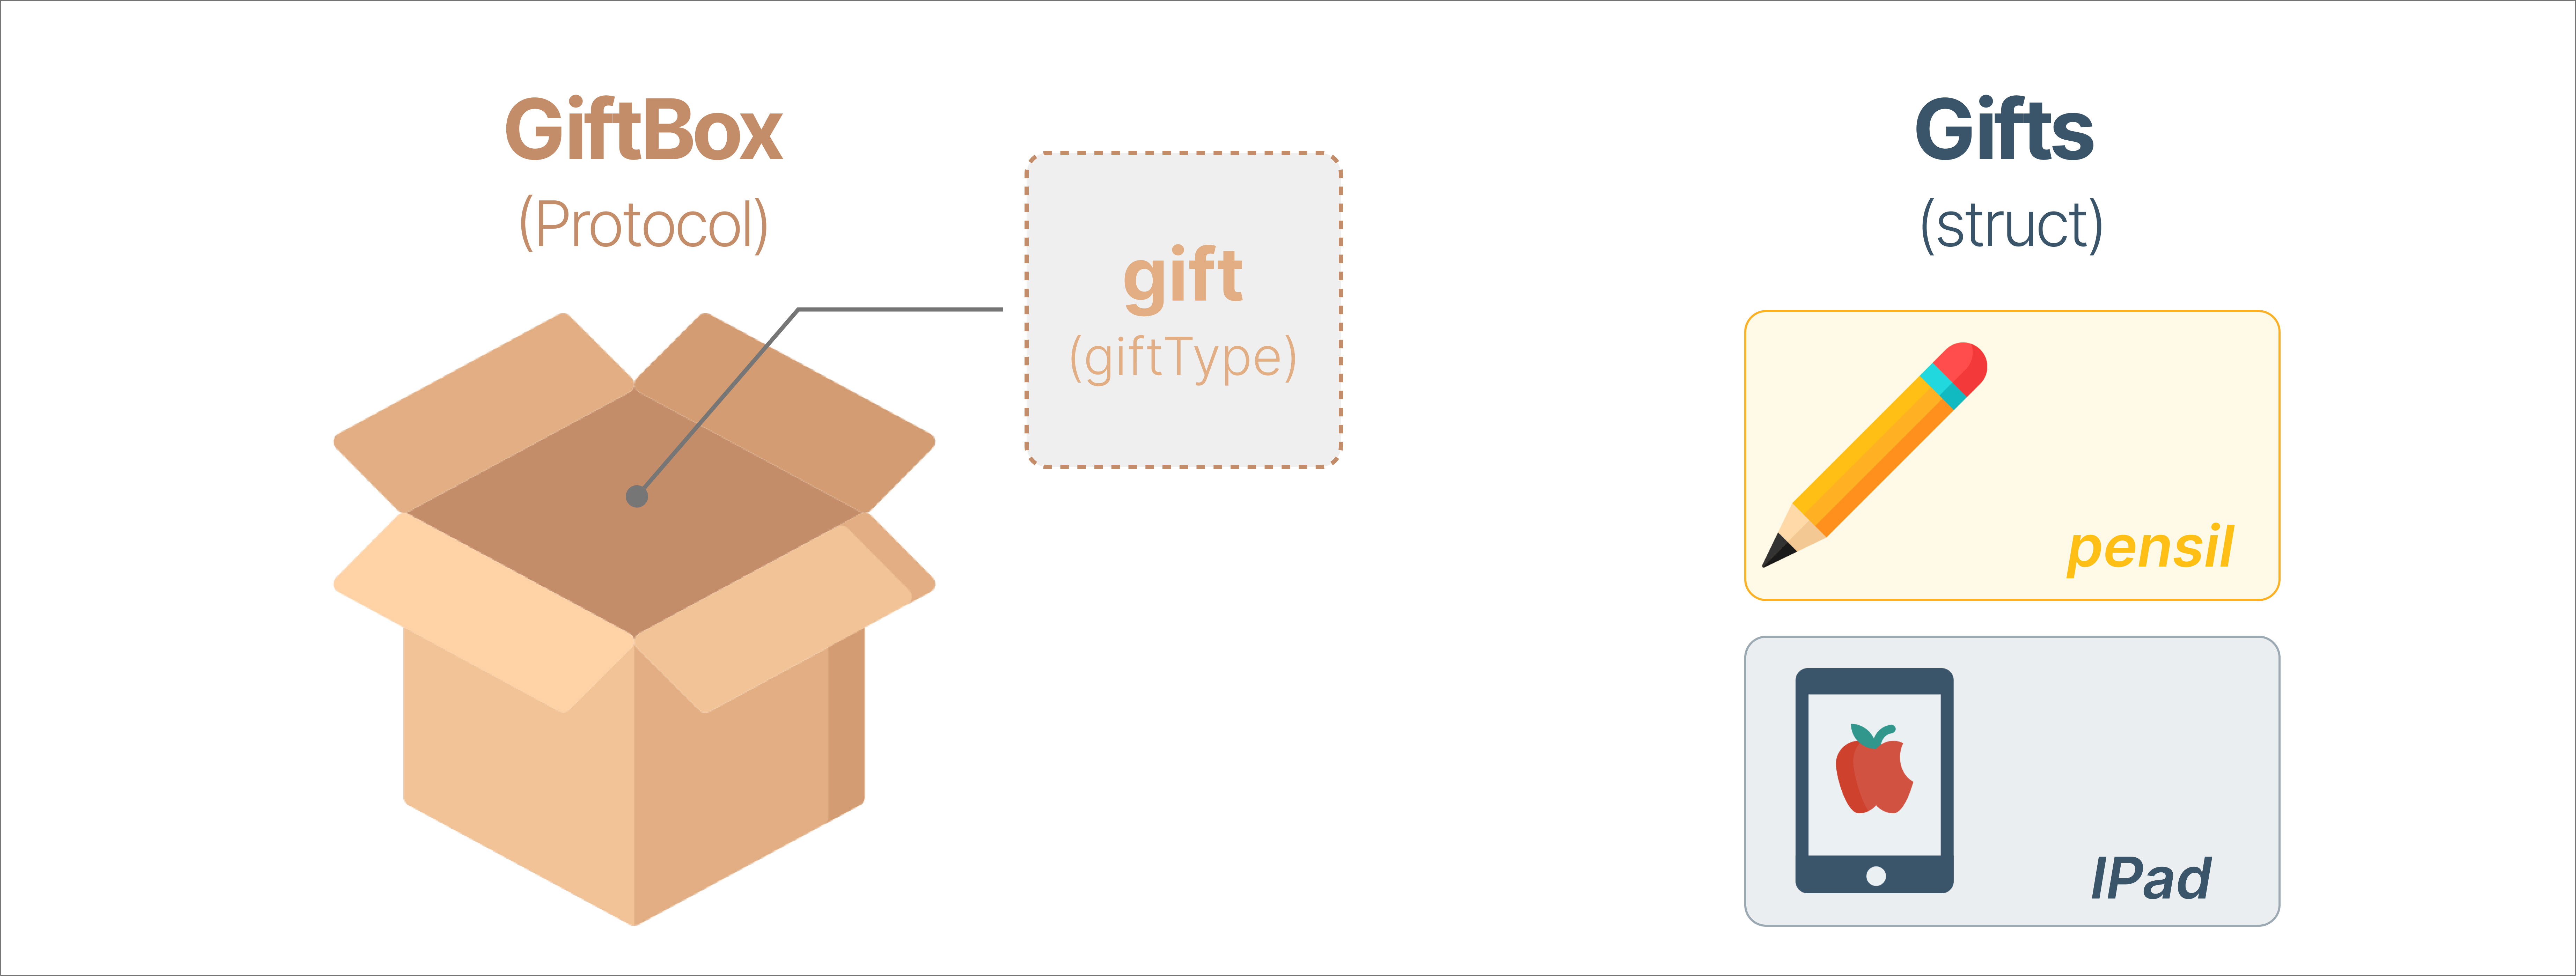 GiftBox 박스(프로토콜)엔 IPad와 Pensil이 포함될 예정